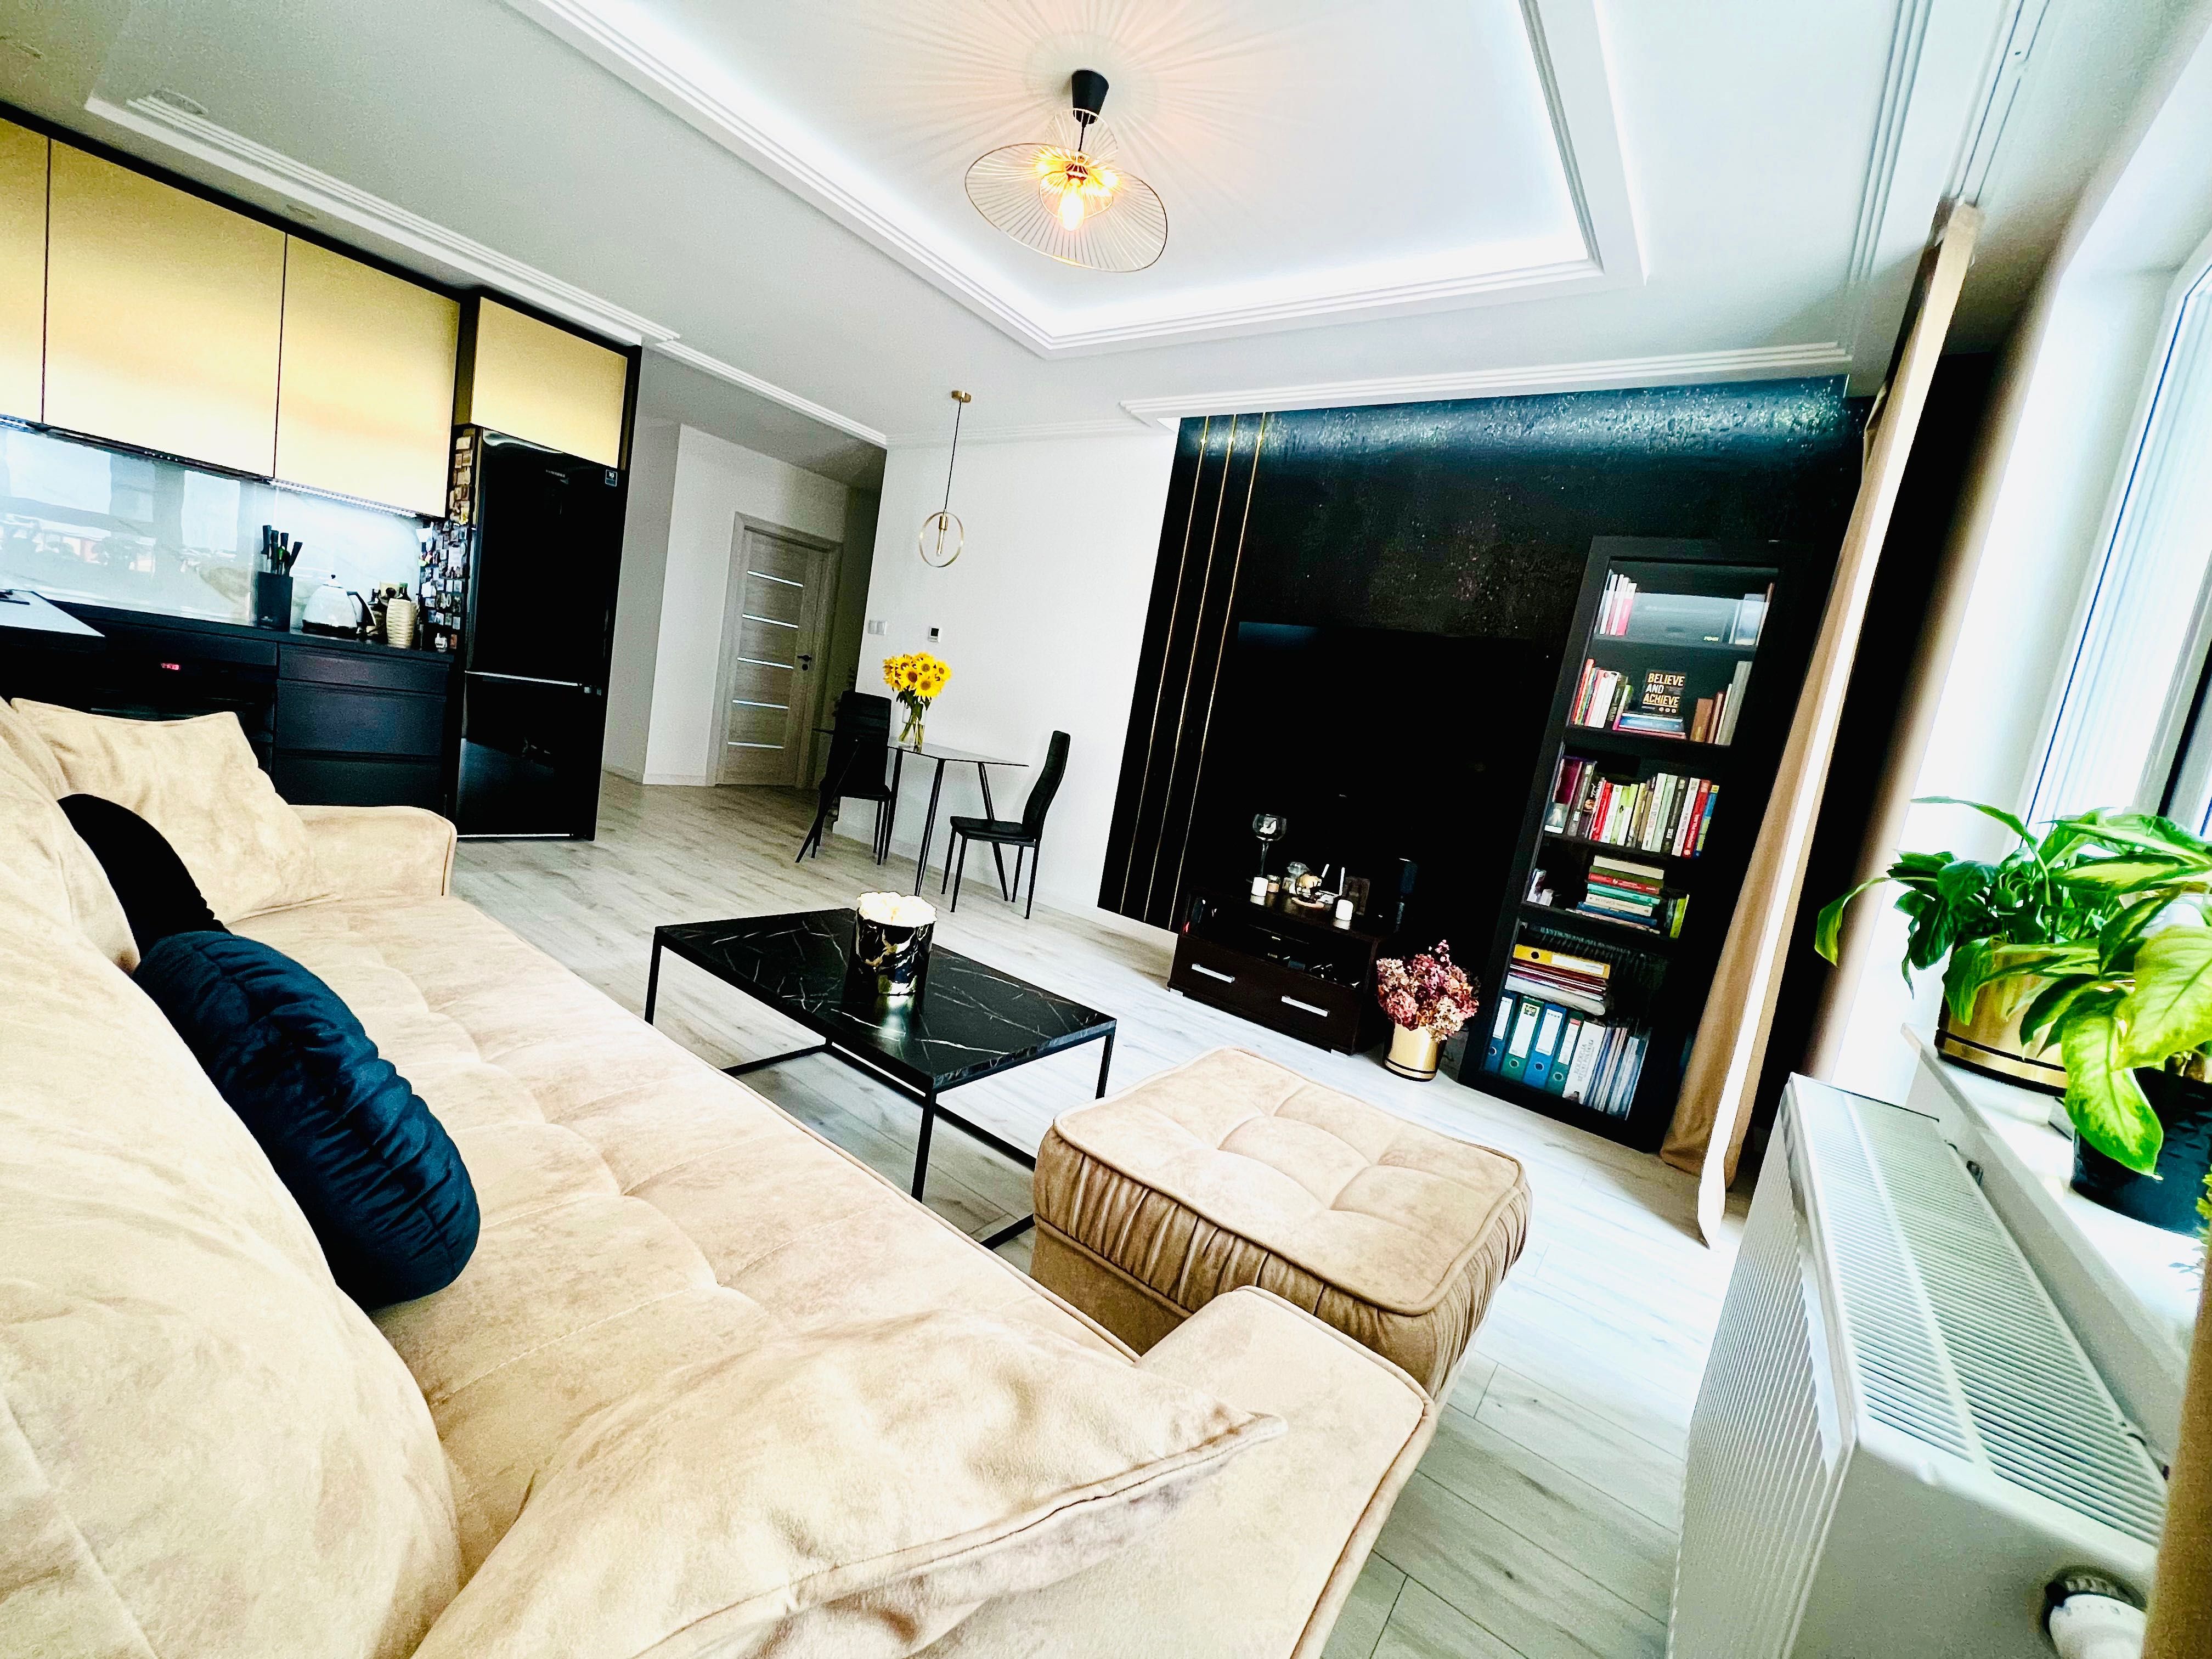 Mieszkanie 3 pokoje 60m2 stan idealny! najwyższa jakość! Premium!